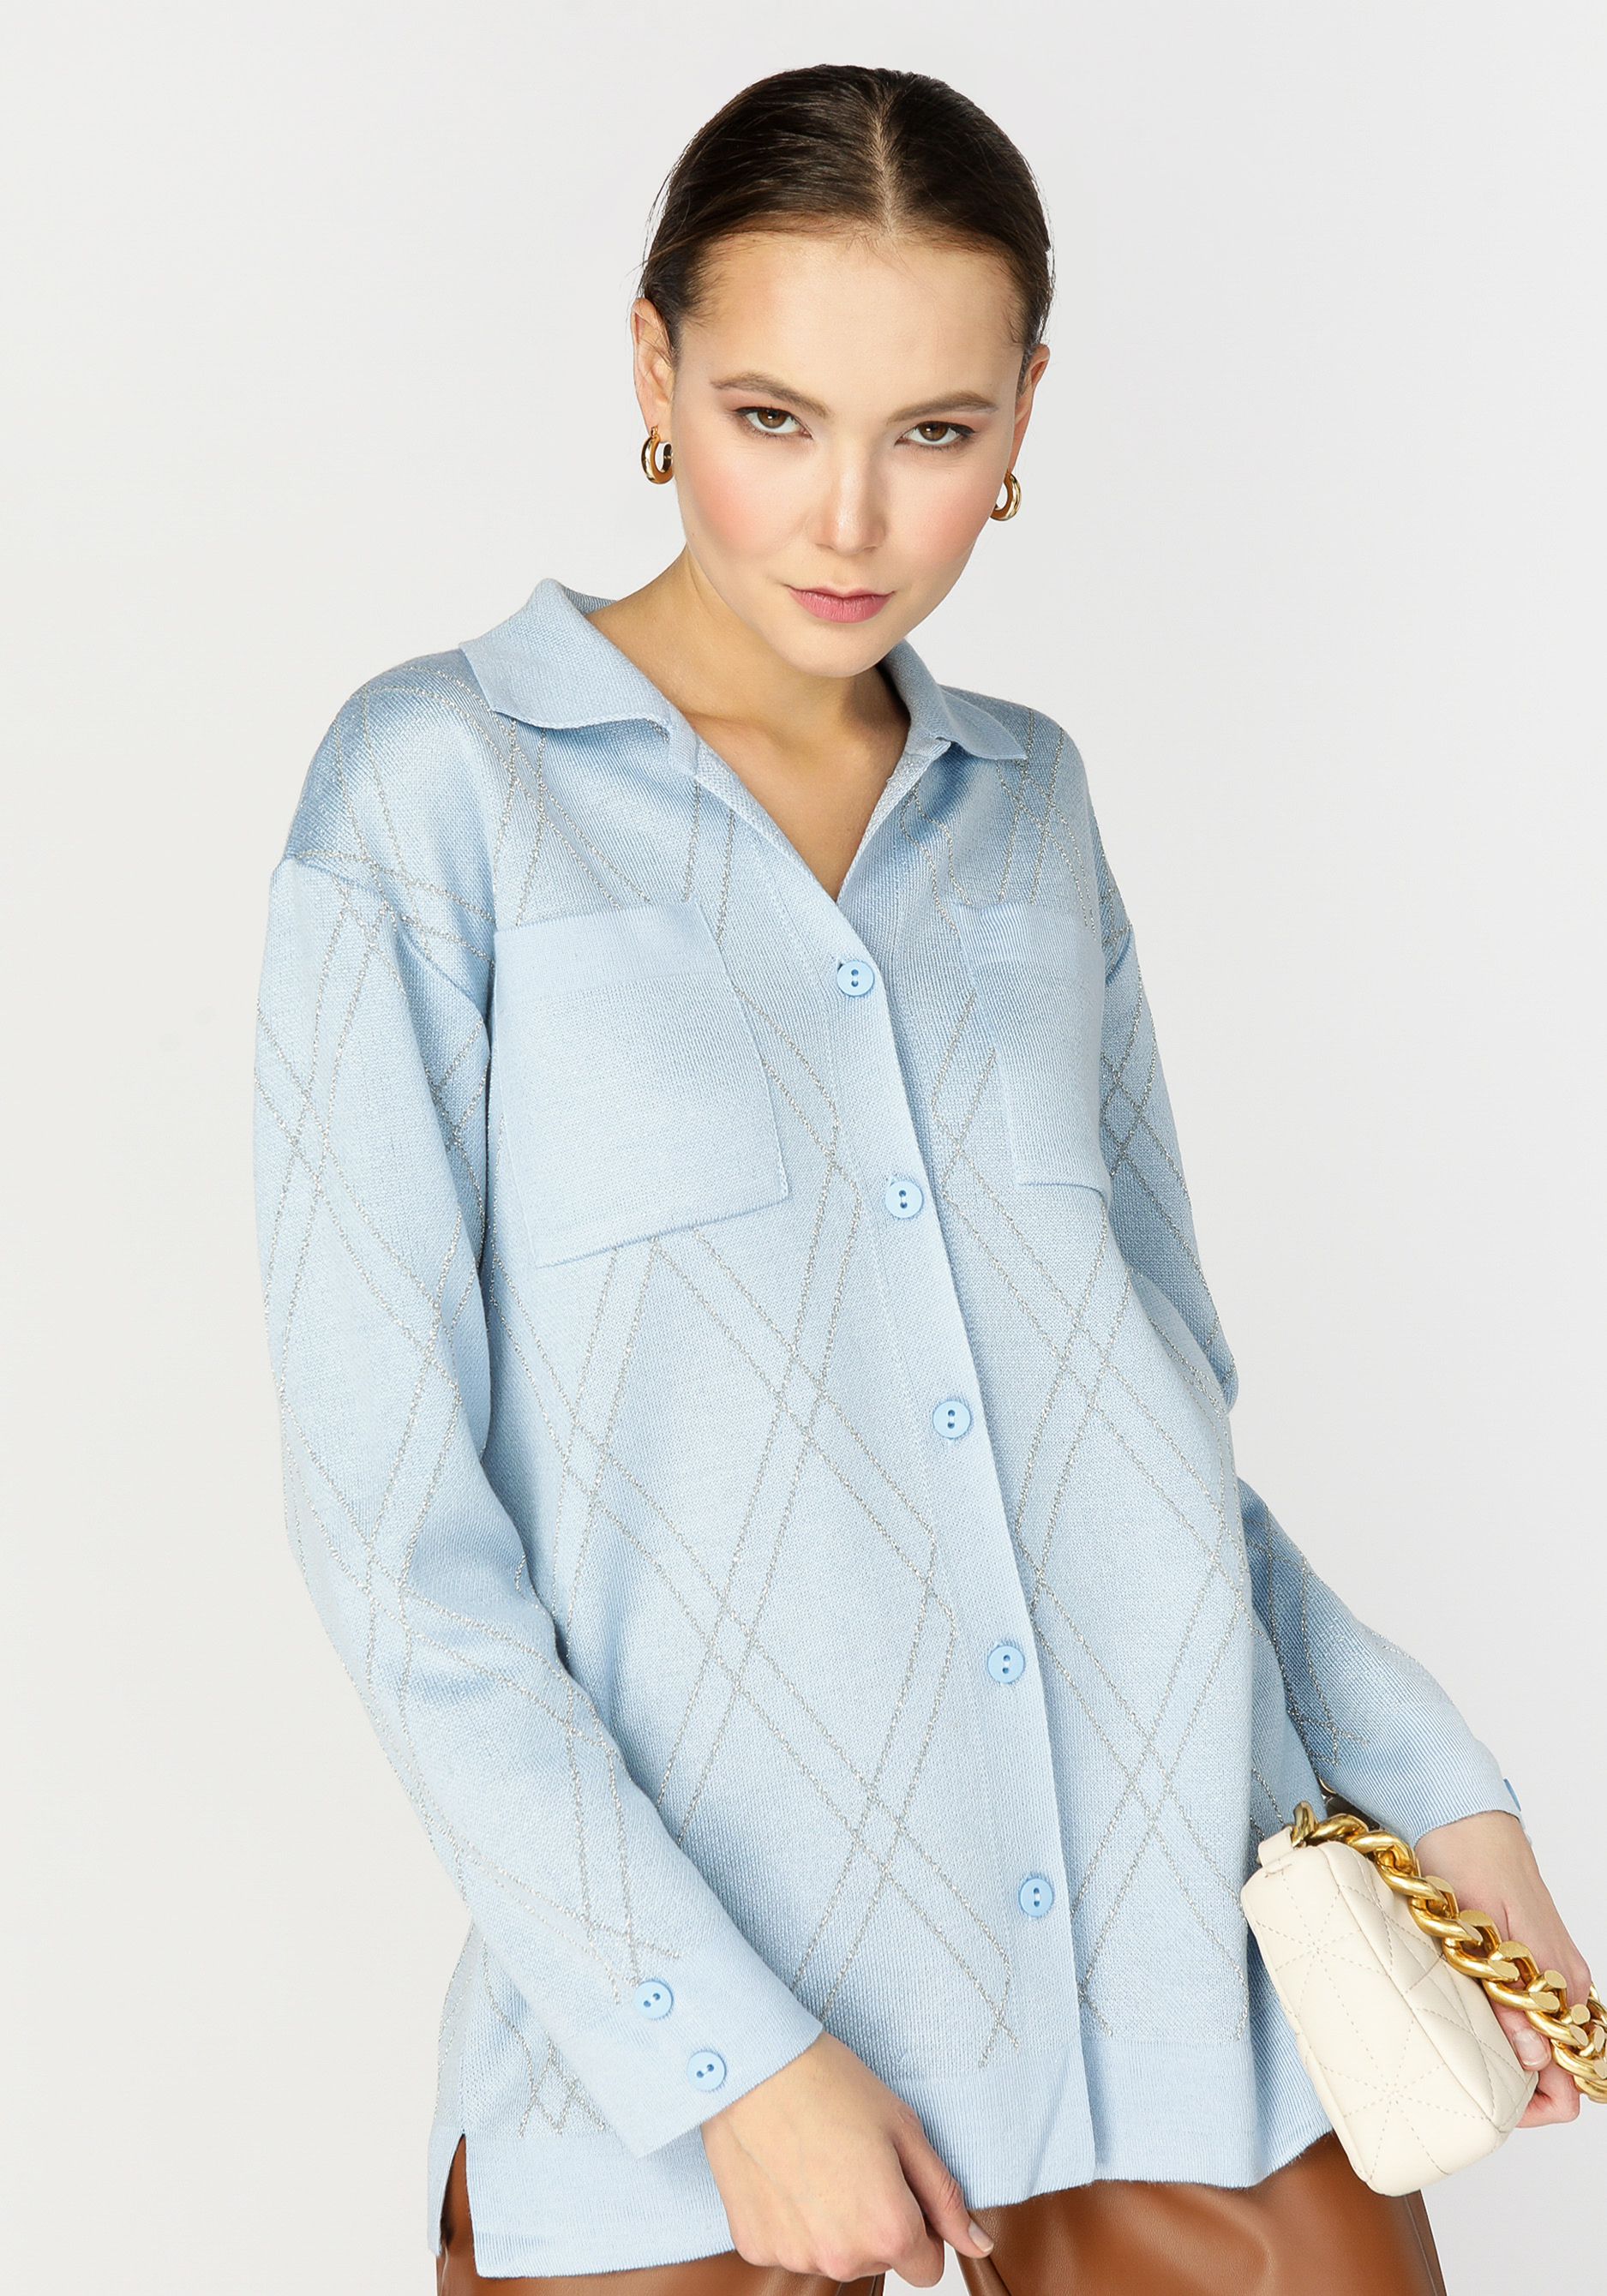 Рубашка женская с метанитью жен рубашка летняя голубой р 58